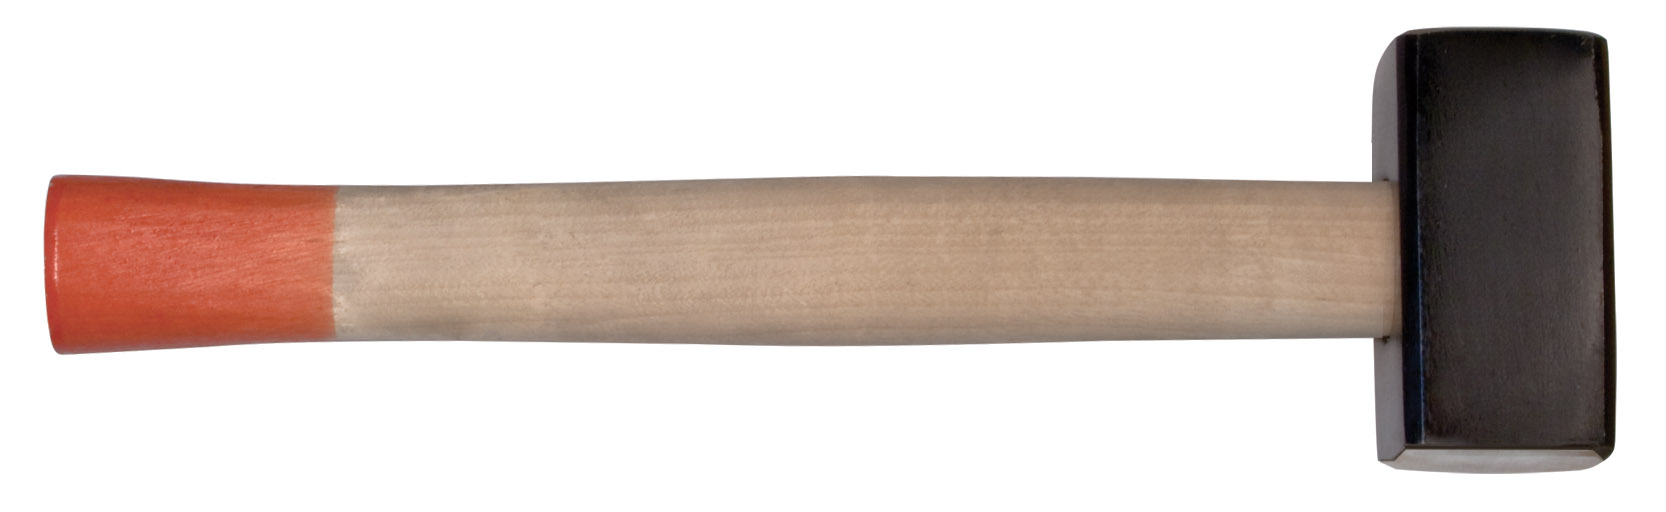 Кувалда кованая в сборе, деревянная ручка  5 кг KУРС 45025